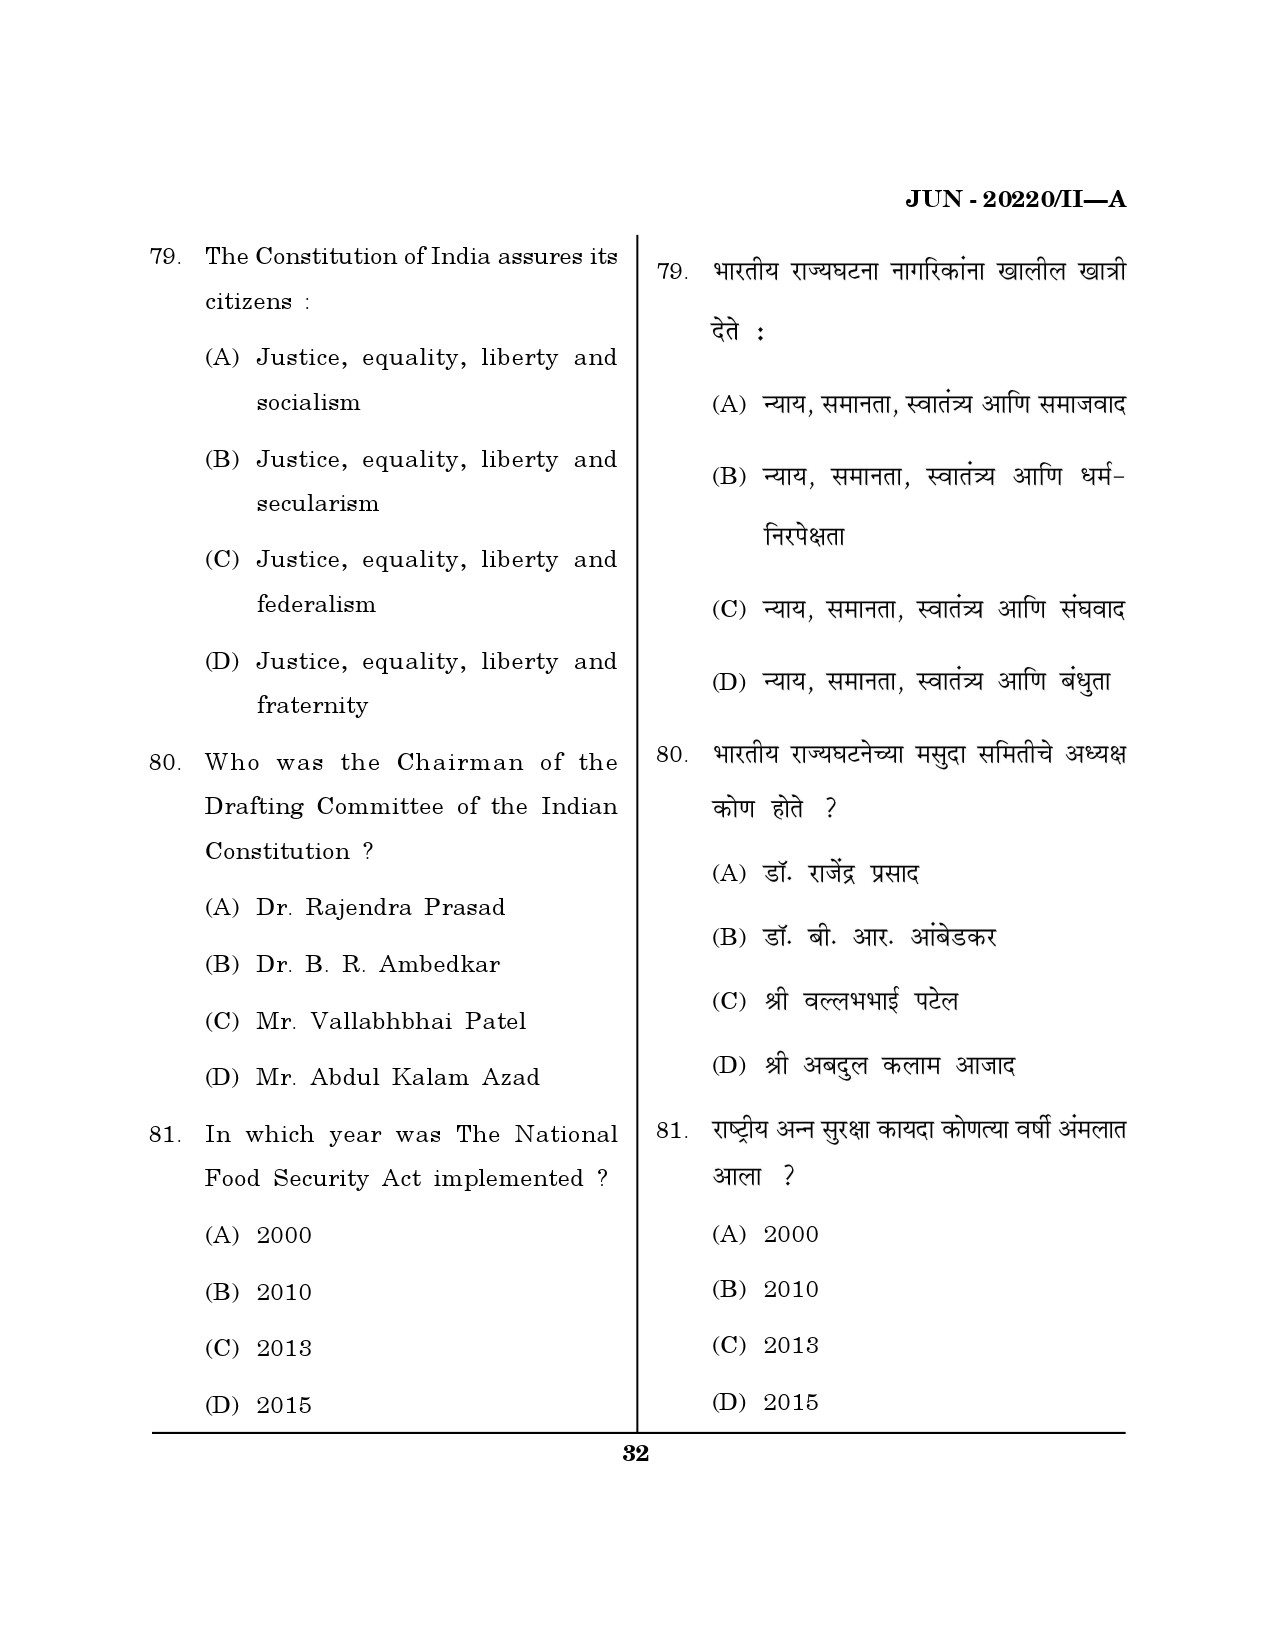 Maharashtra SET Social Work Question Paper II June 2020 31